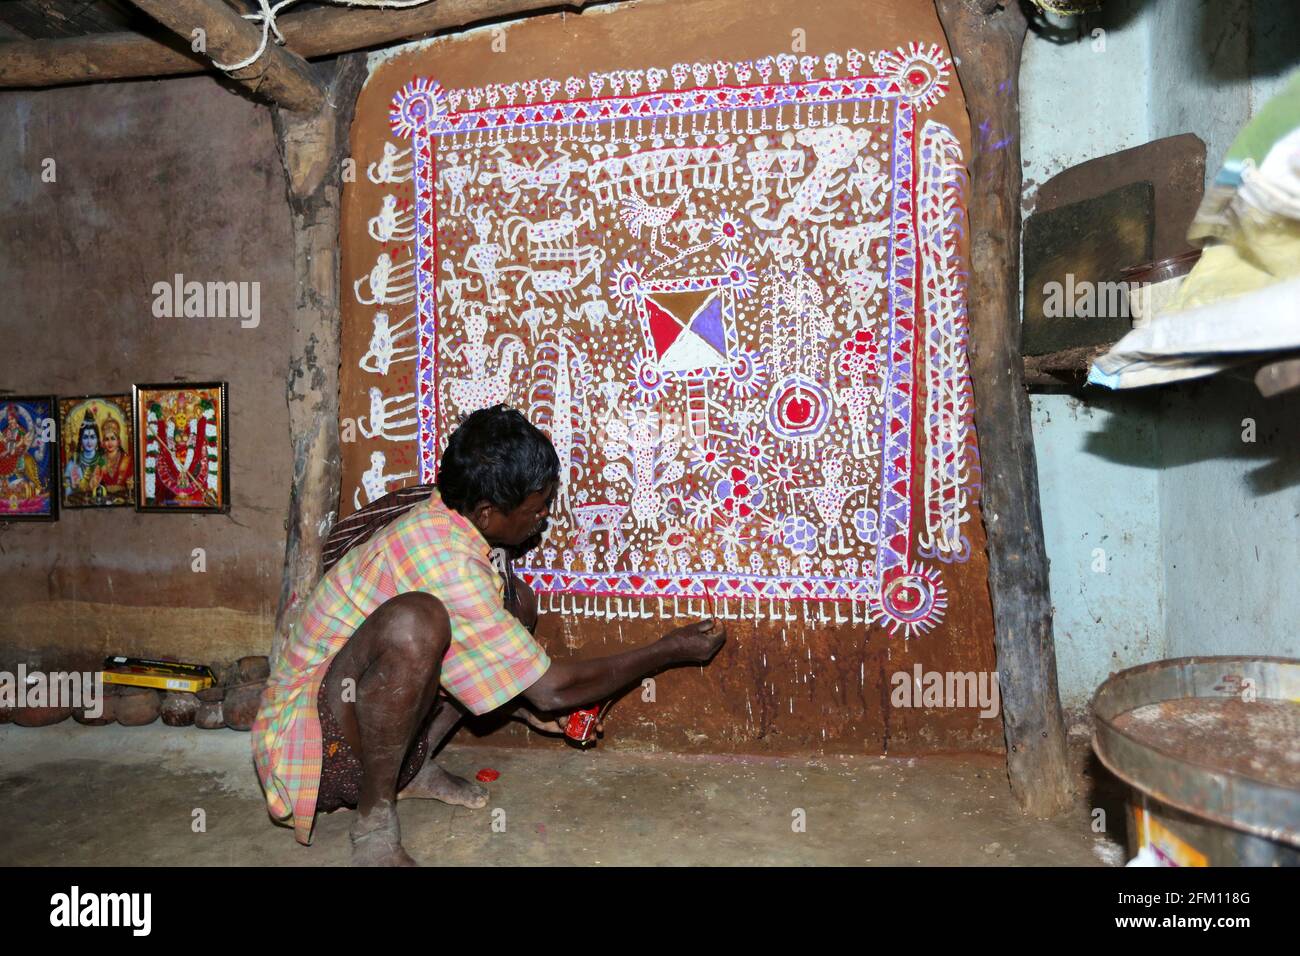 Stammeskünstler, der traditionelle Savara-Malerei an Hauswand im Dorf Masaguda im Bezirk Srikakulam, Andhra Pradesh, Indien, macht. SAVARA-STAMM Stockfoto